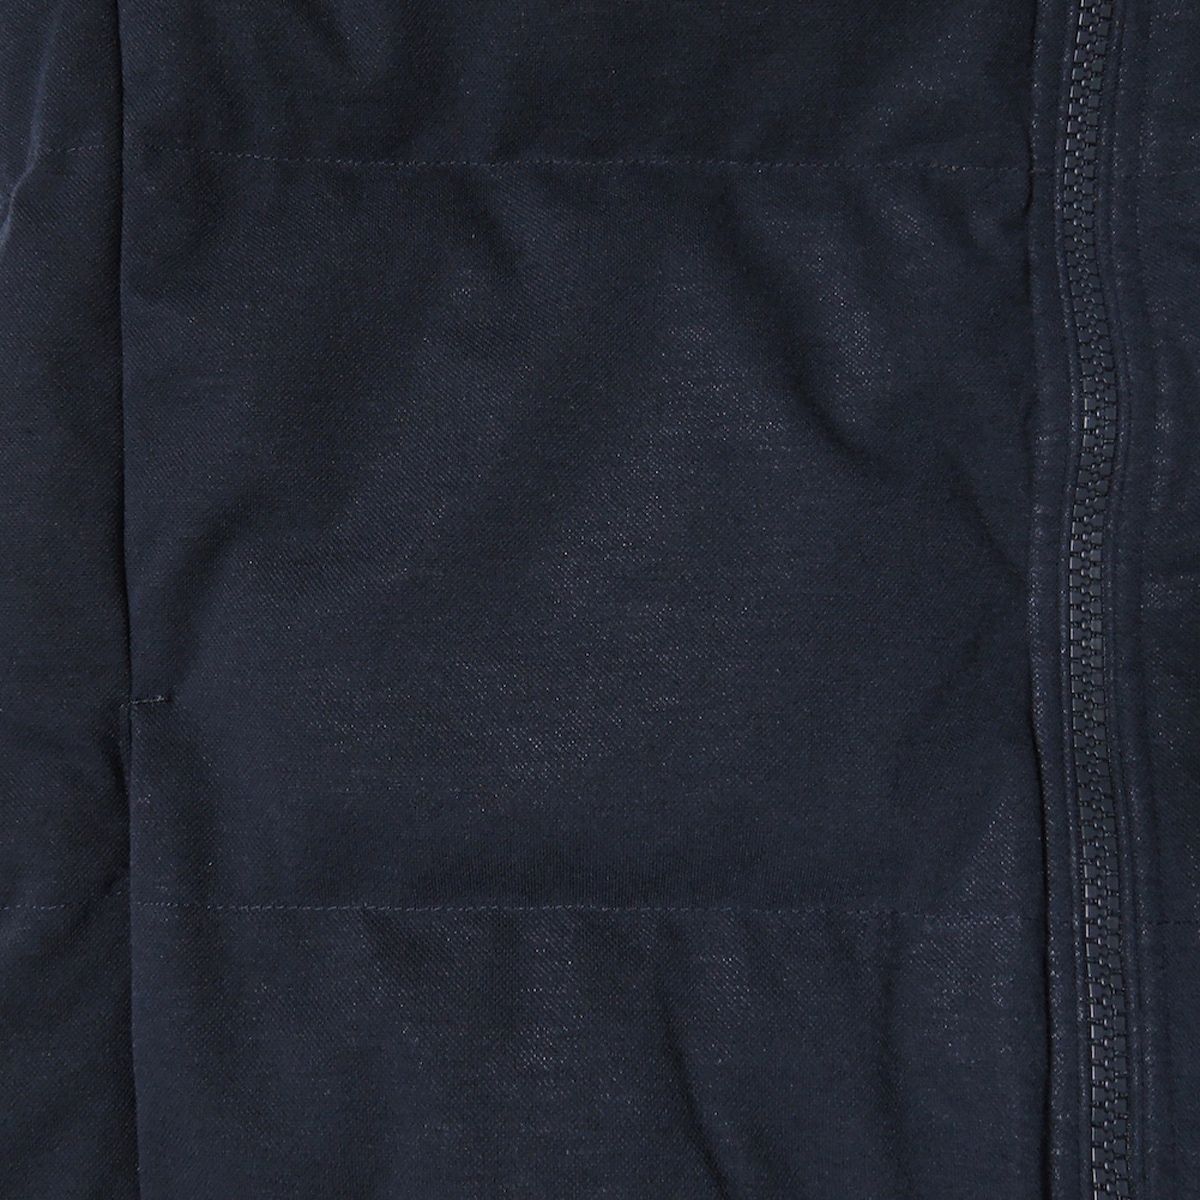 Lacoste(ラコステ) ダウンジャケット サイズUS M メンズ - ダークネイビー 長袖/冬